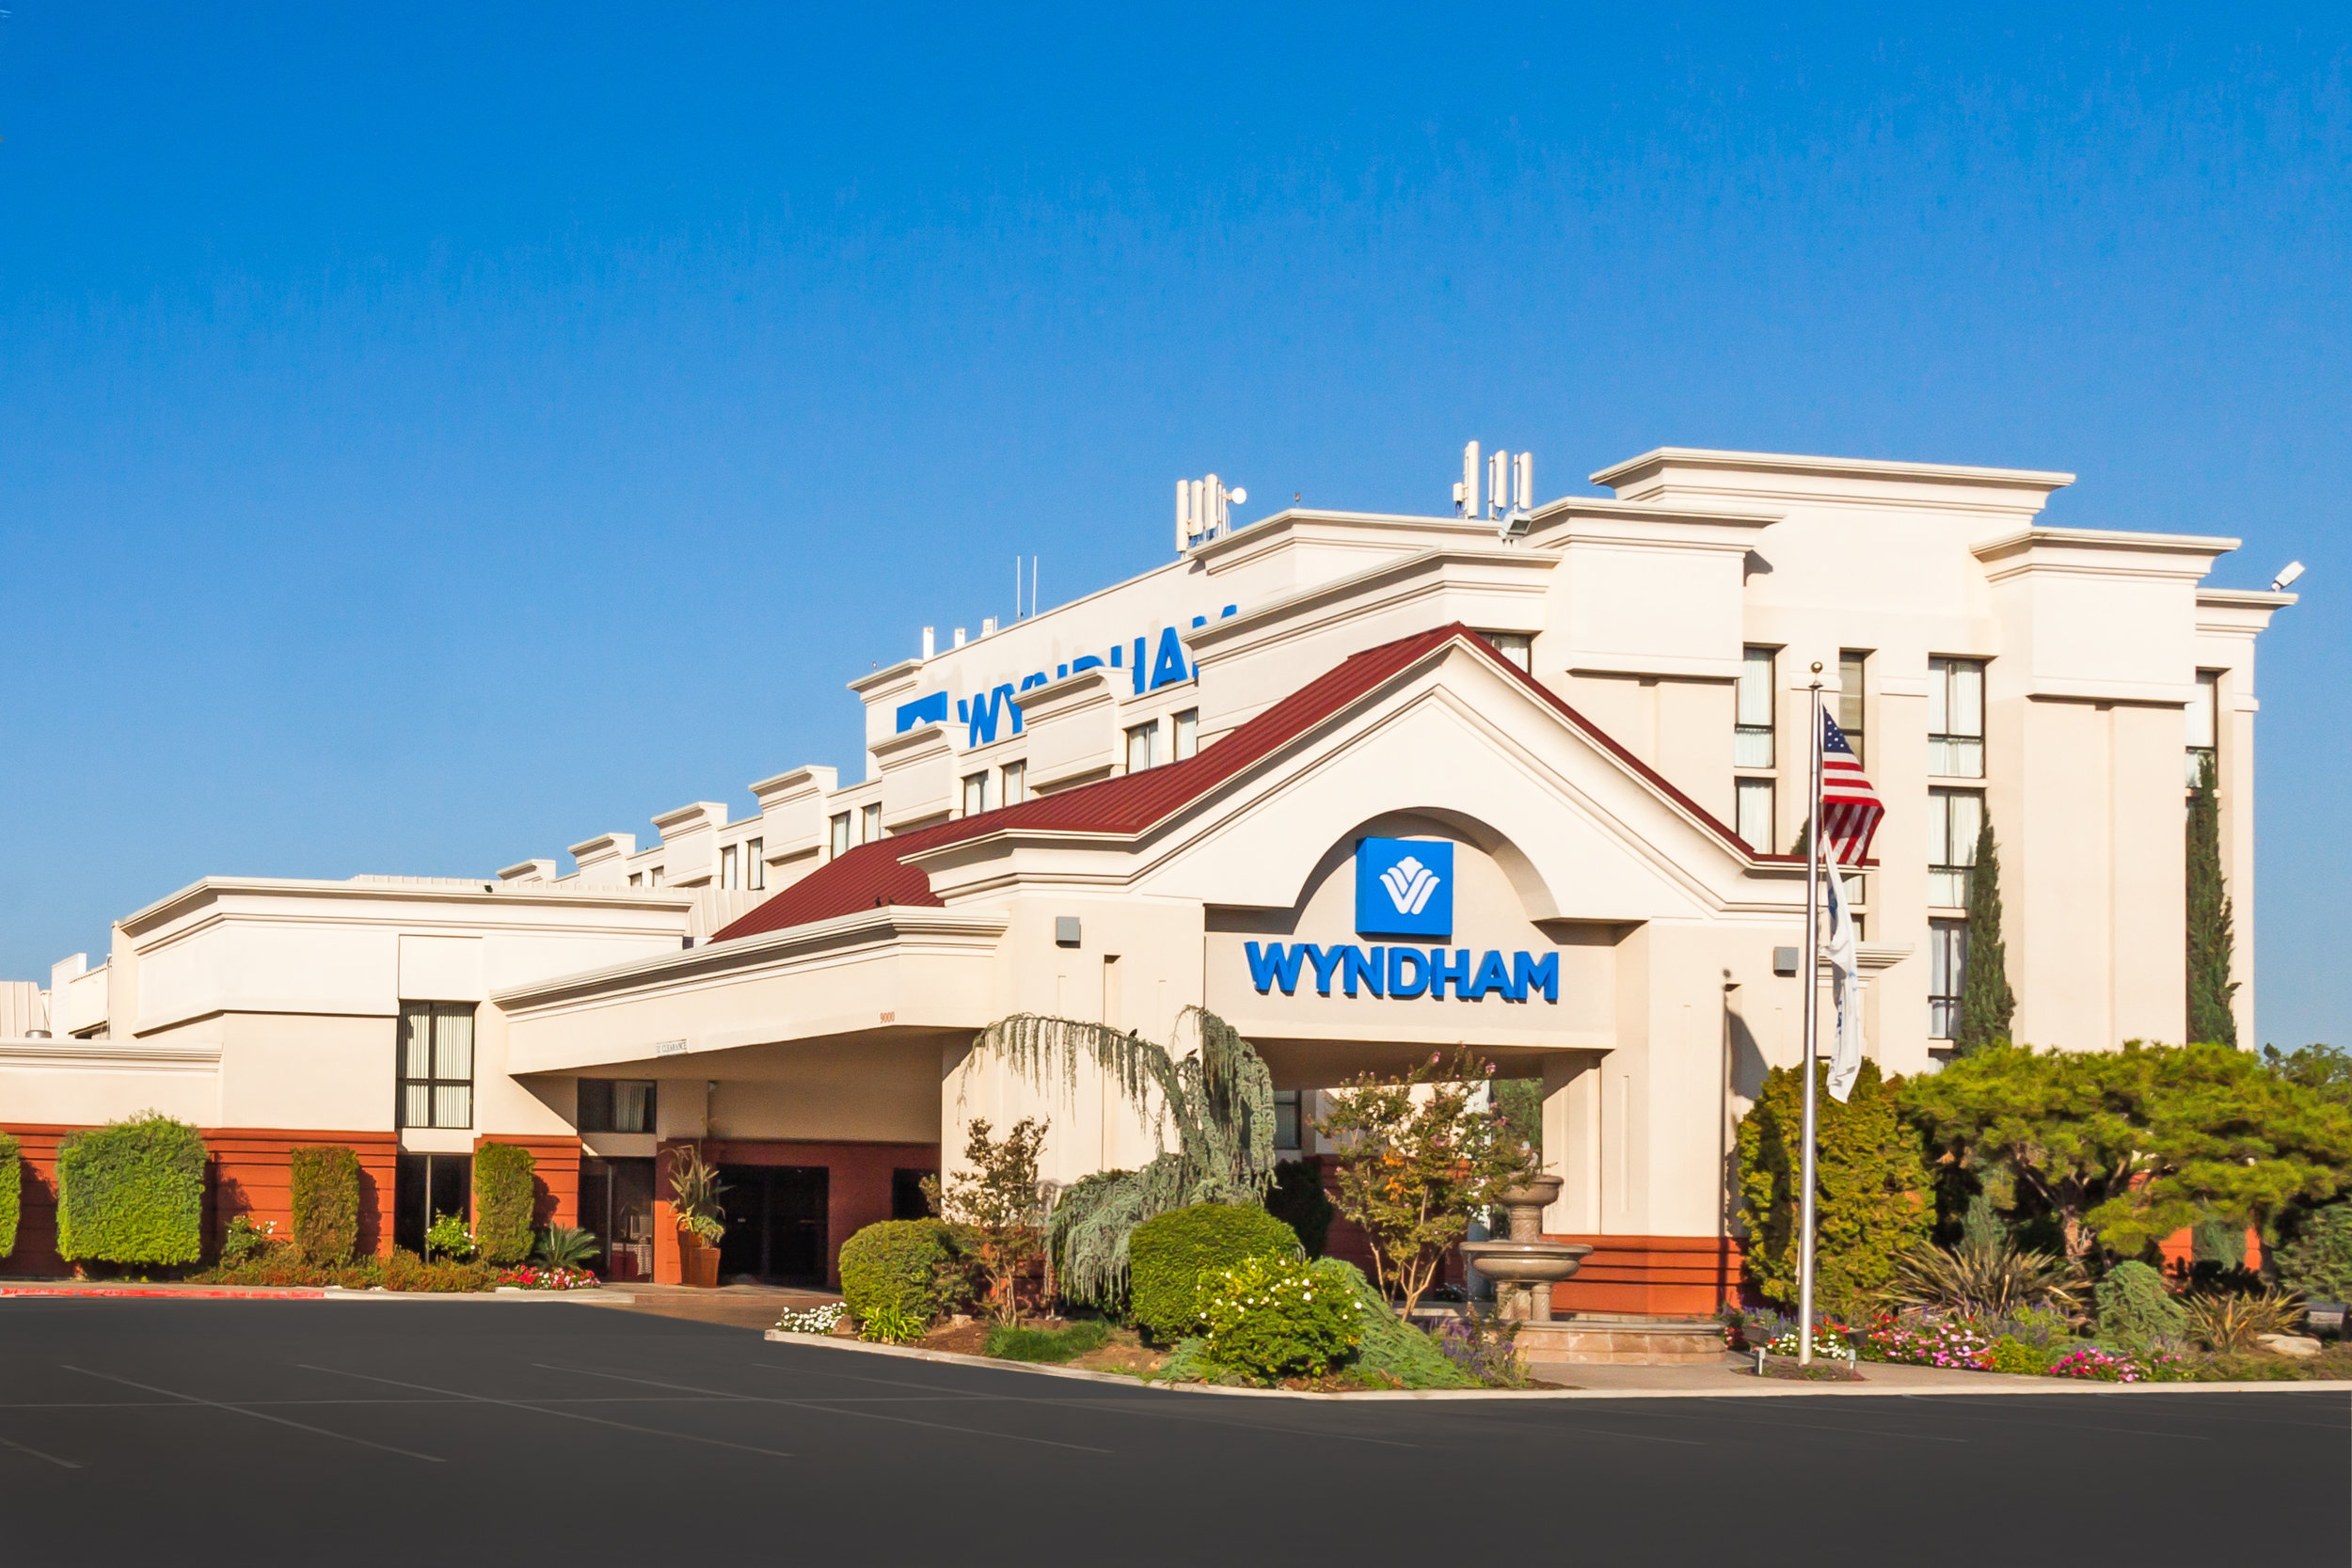 Wyndham Visalia Hotel picture.jpg